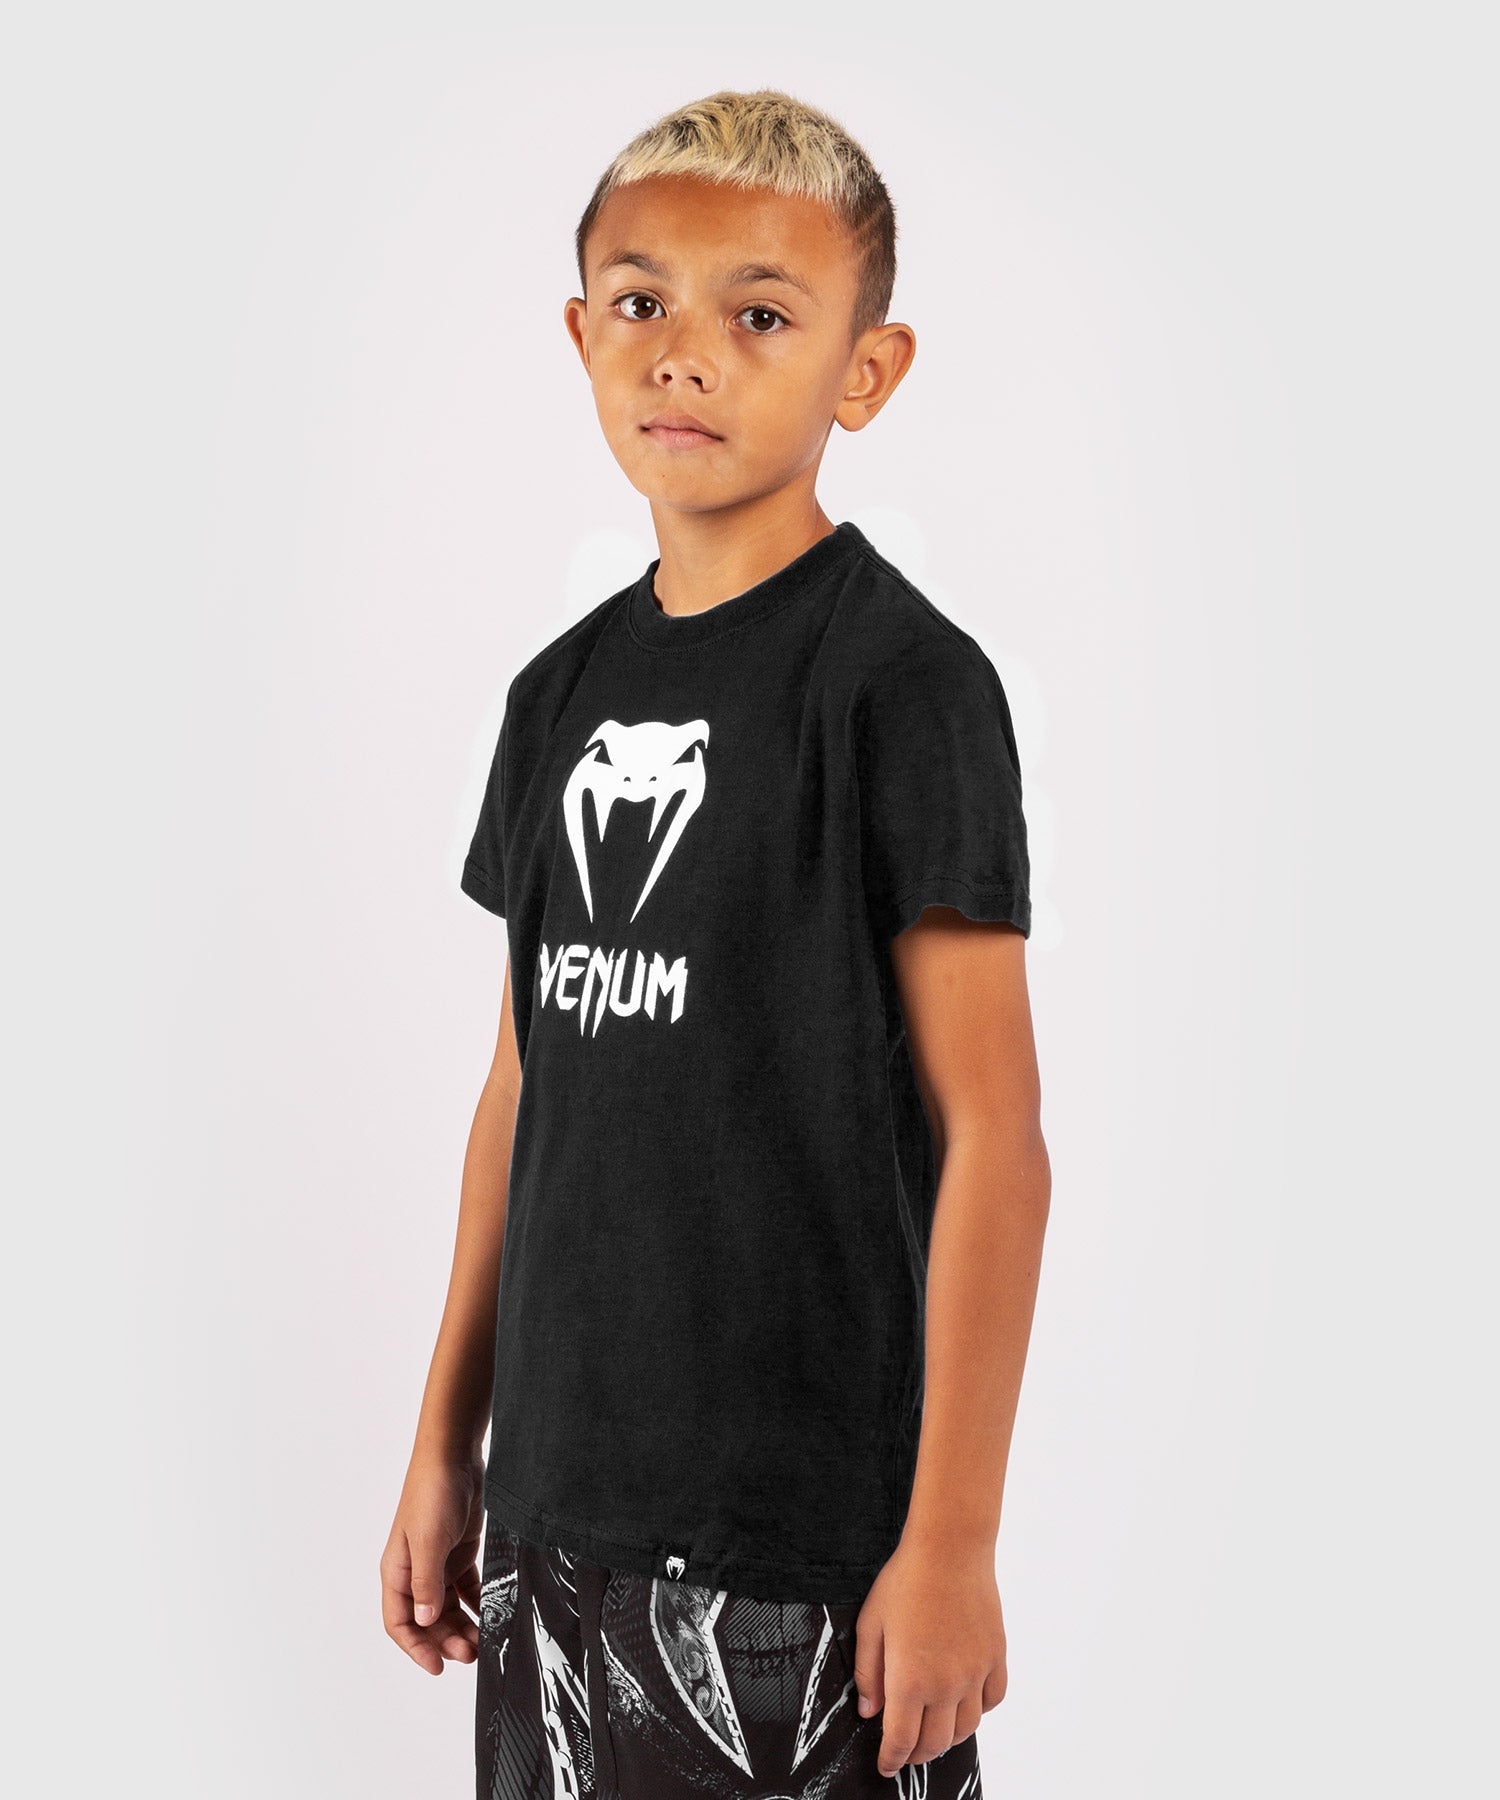 Venum Classic T-shirt Asia - - Kids - Black Venum